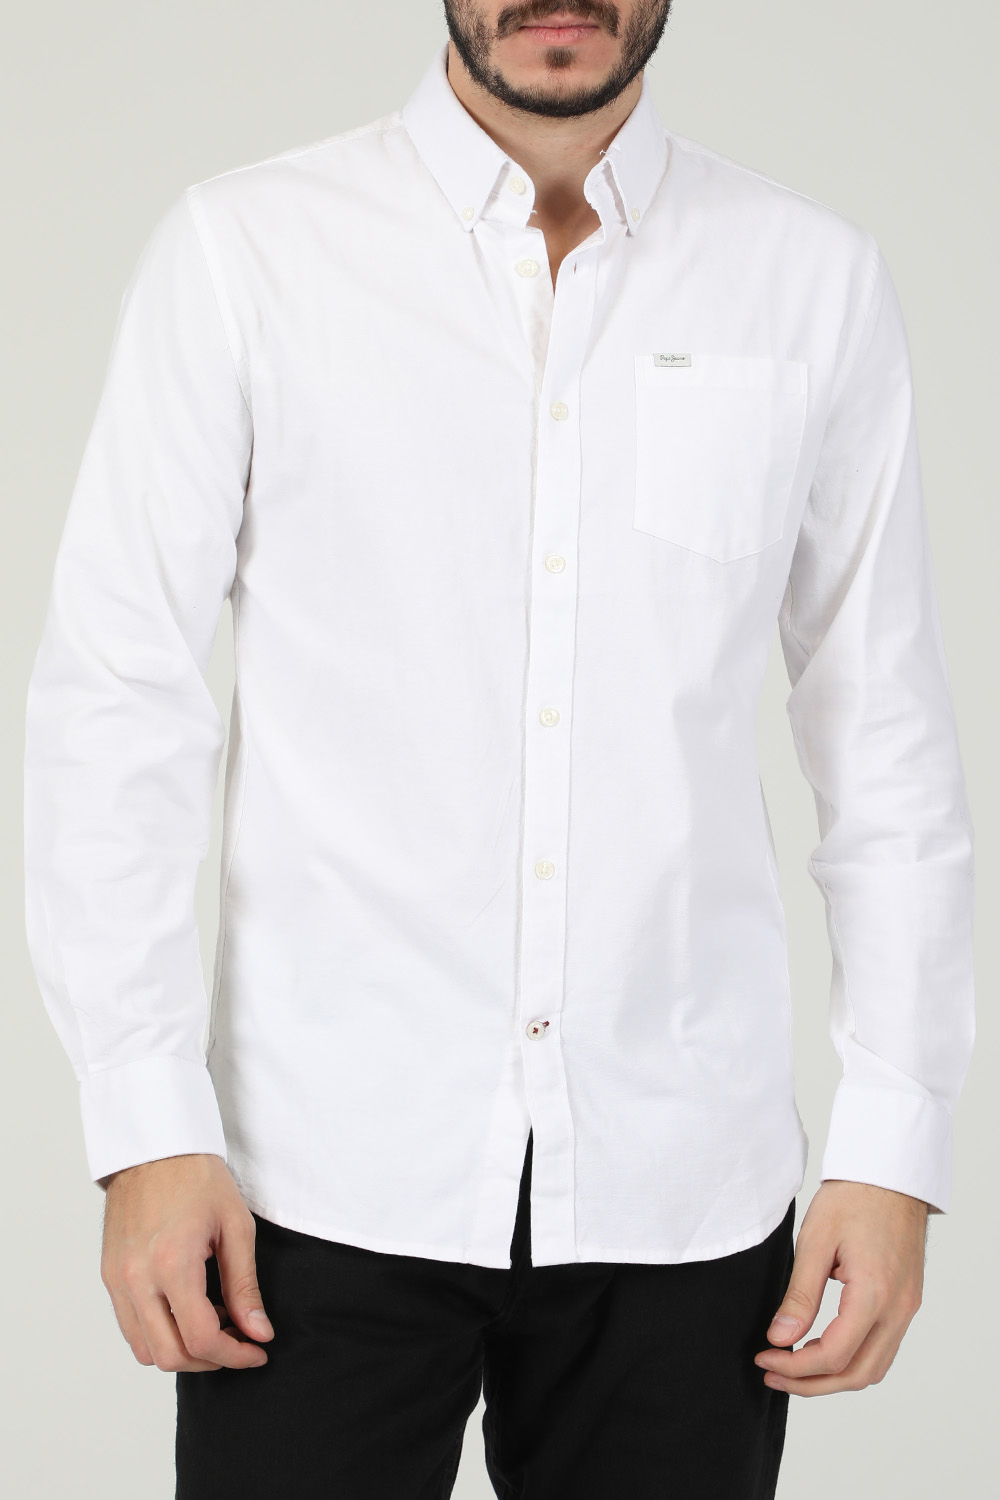 Ανδρικά/Ρούχα/Πουκάμισα/Μακρυμάνικα PEPE JEANS - Ανδρικό πουκάμισο PEPE JEANS JACKSON λευκό